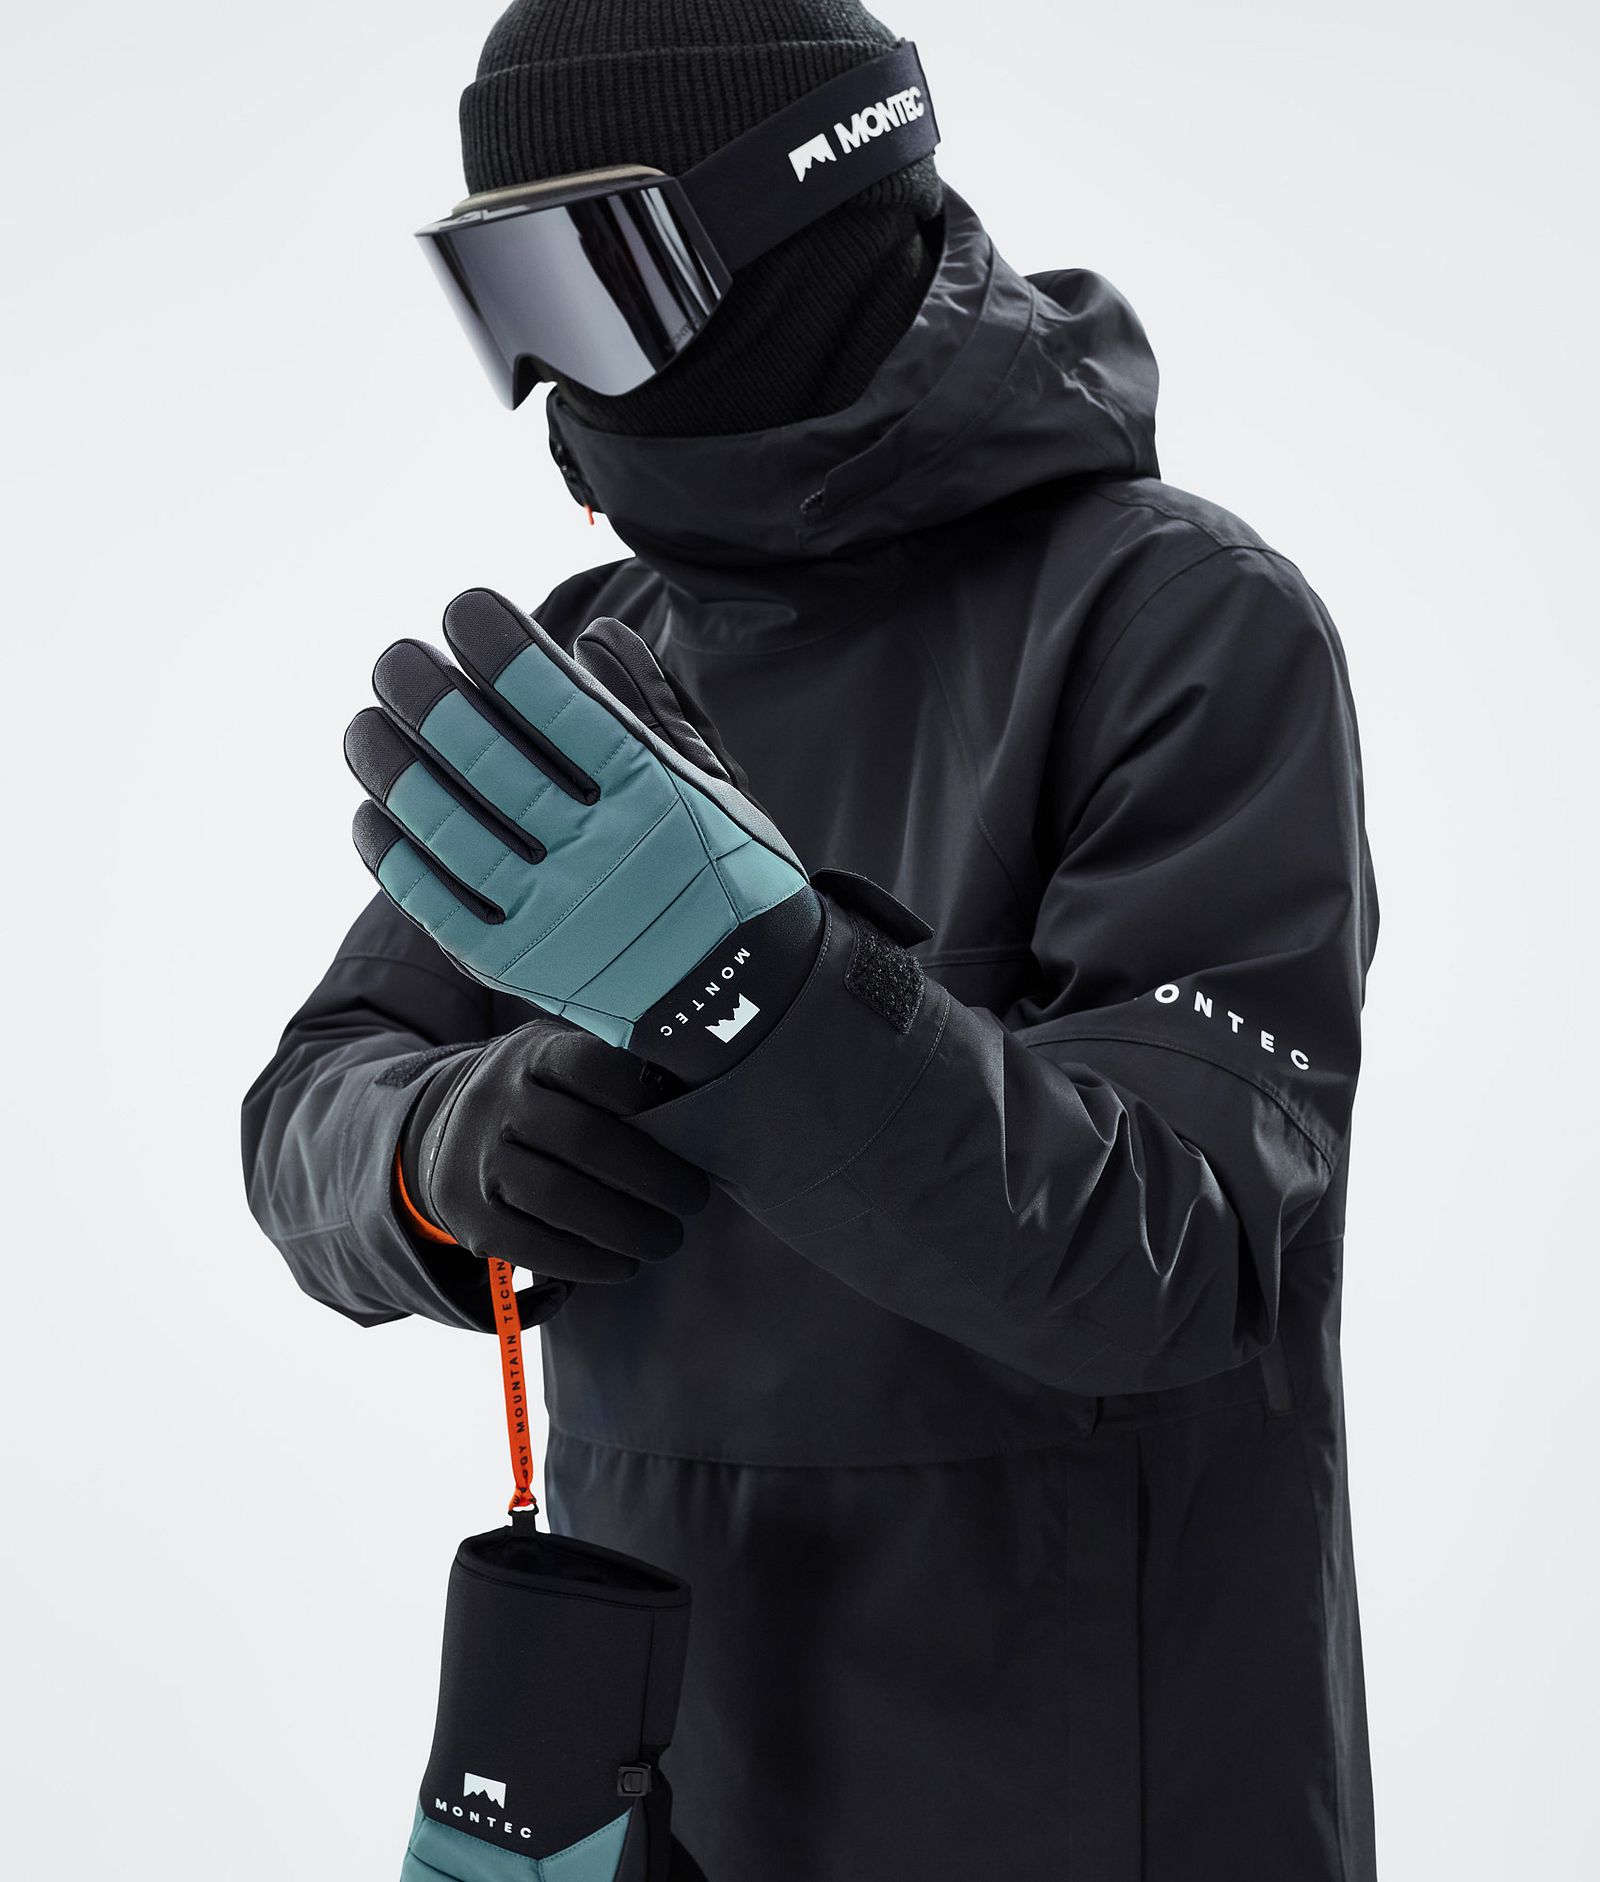 Kilo 2022 Ski Gloves Atlantic